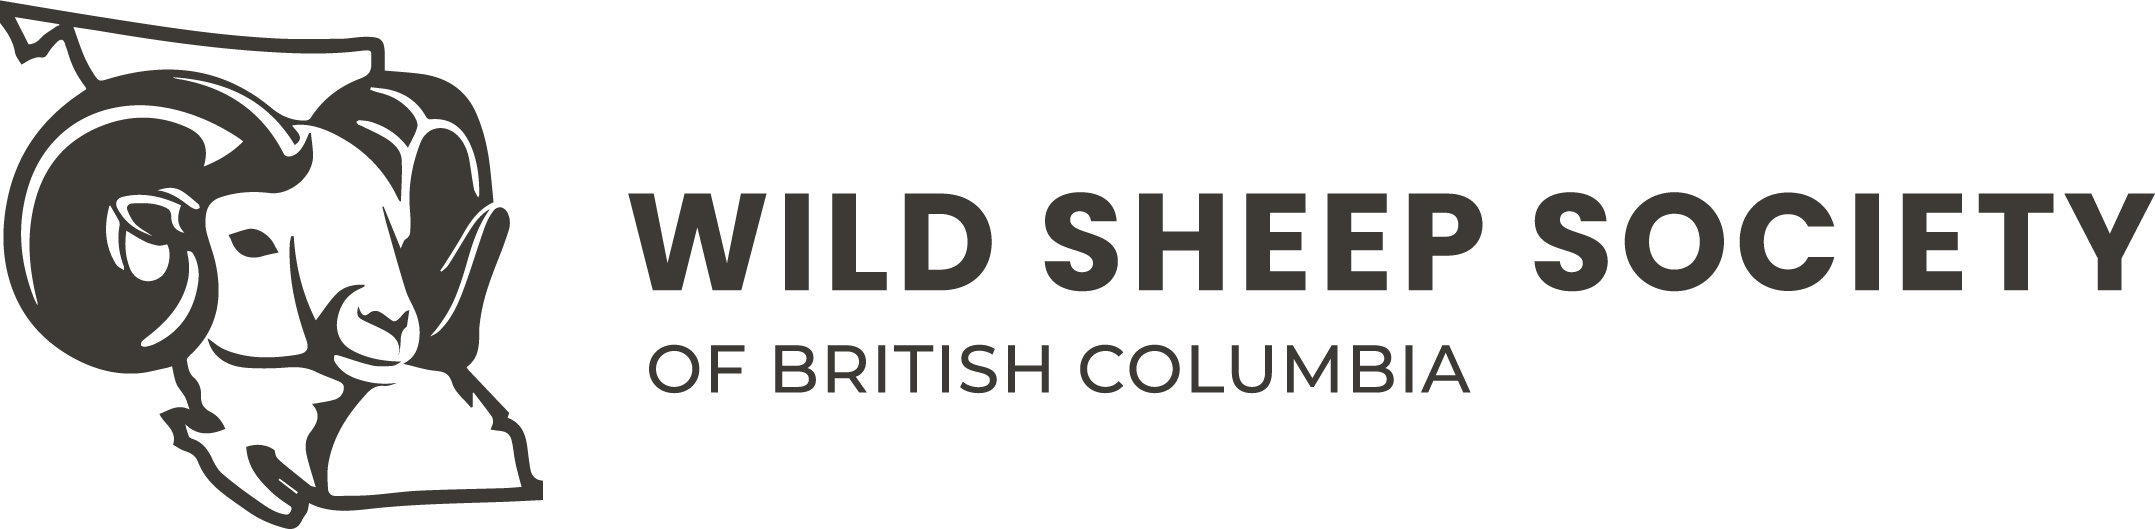 Wild Sheep Society of British Columbia